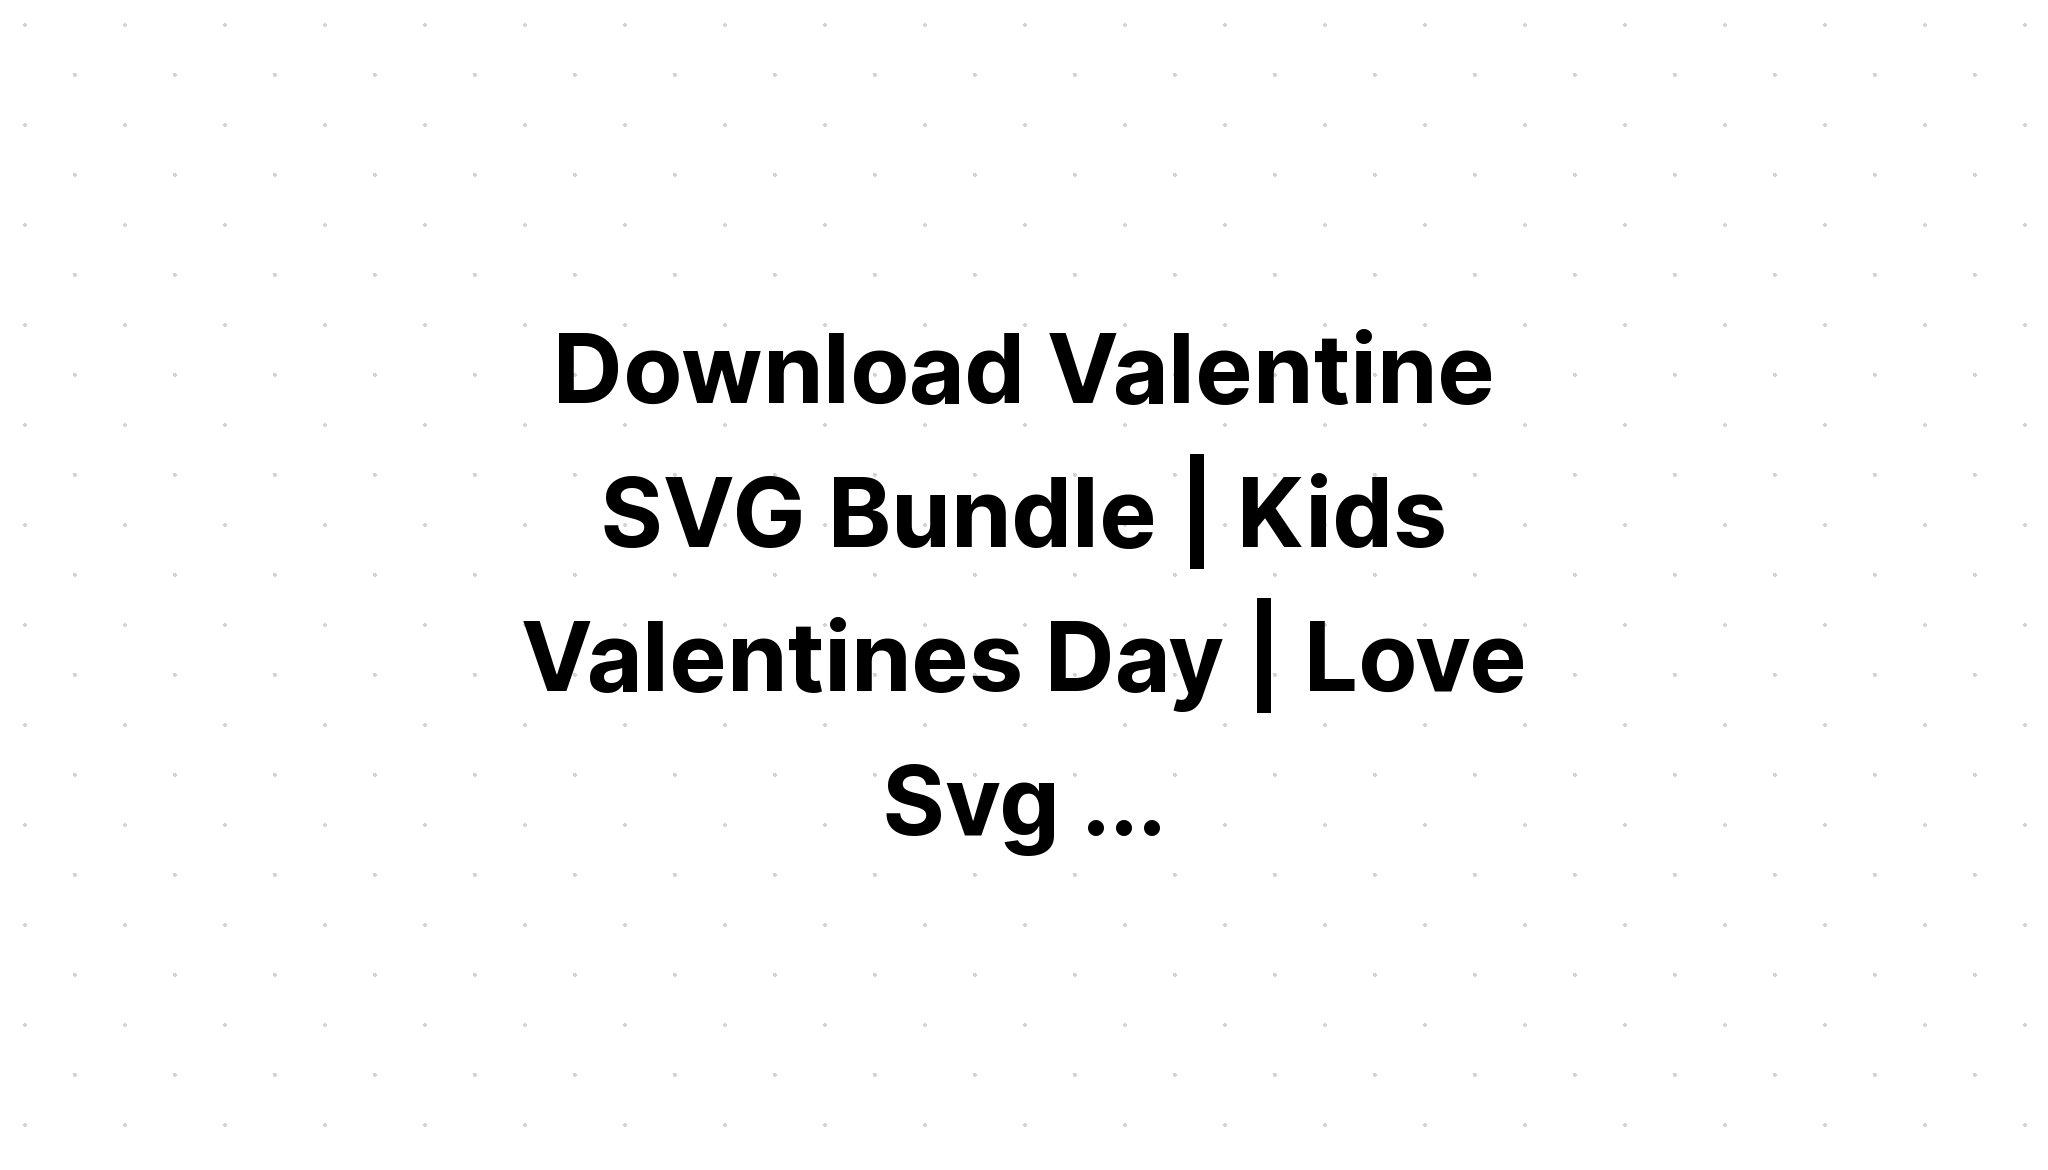 Download Heart Svg Bundle Heart Svg Cut Files SVG File